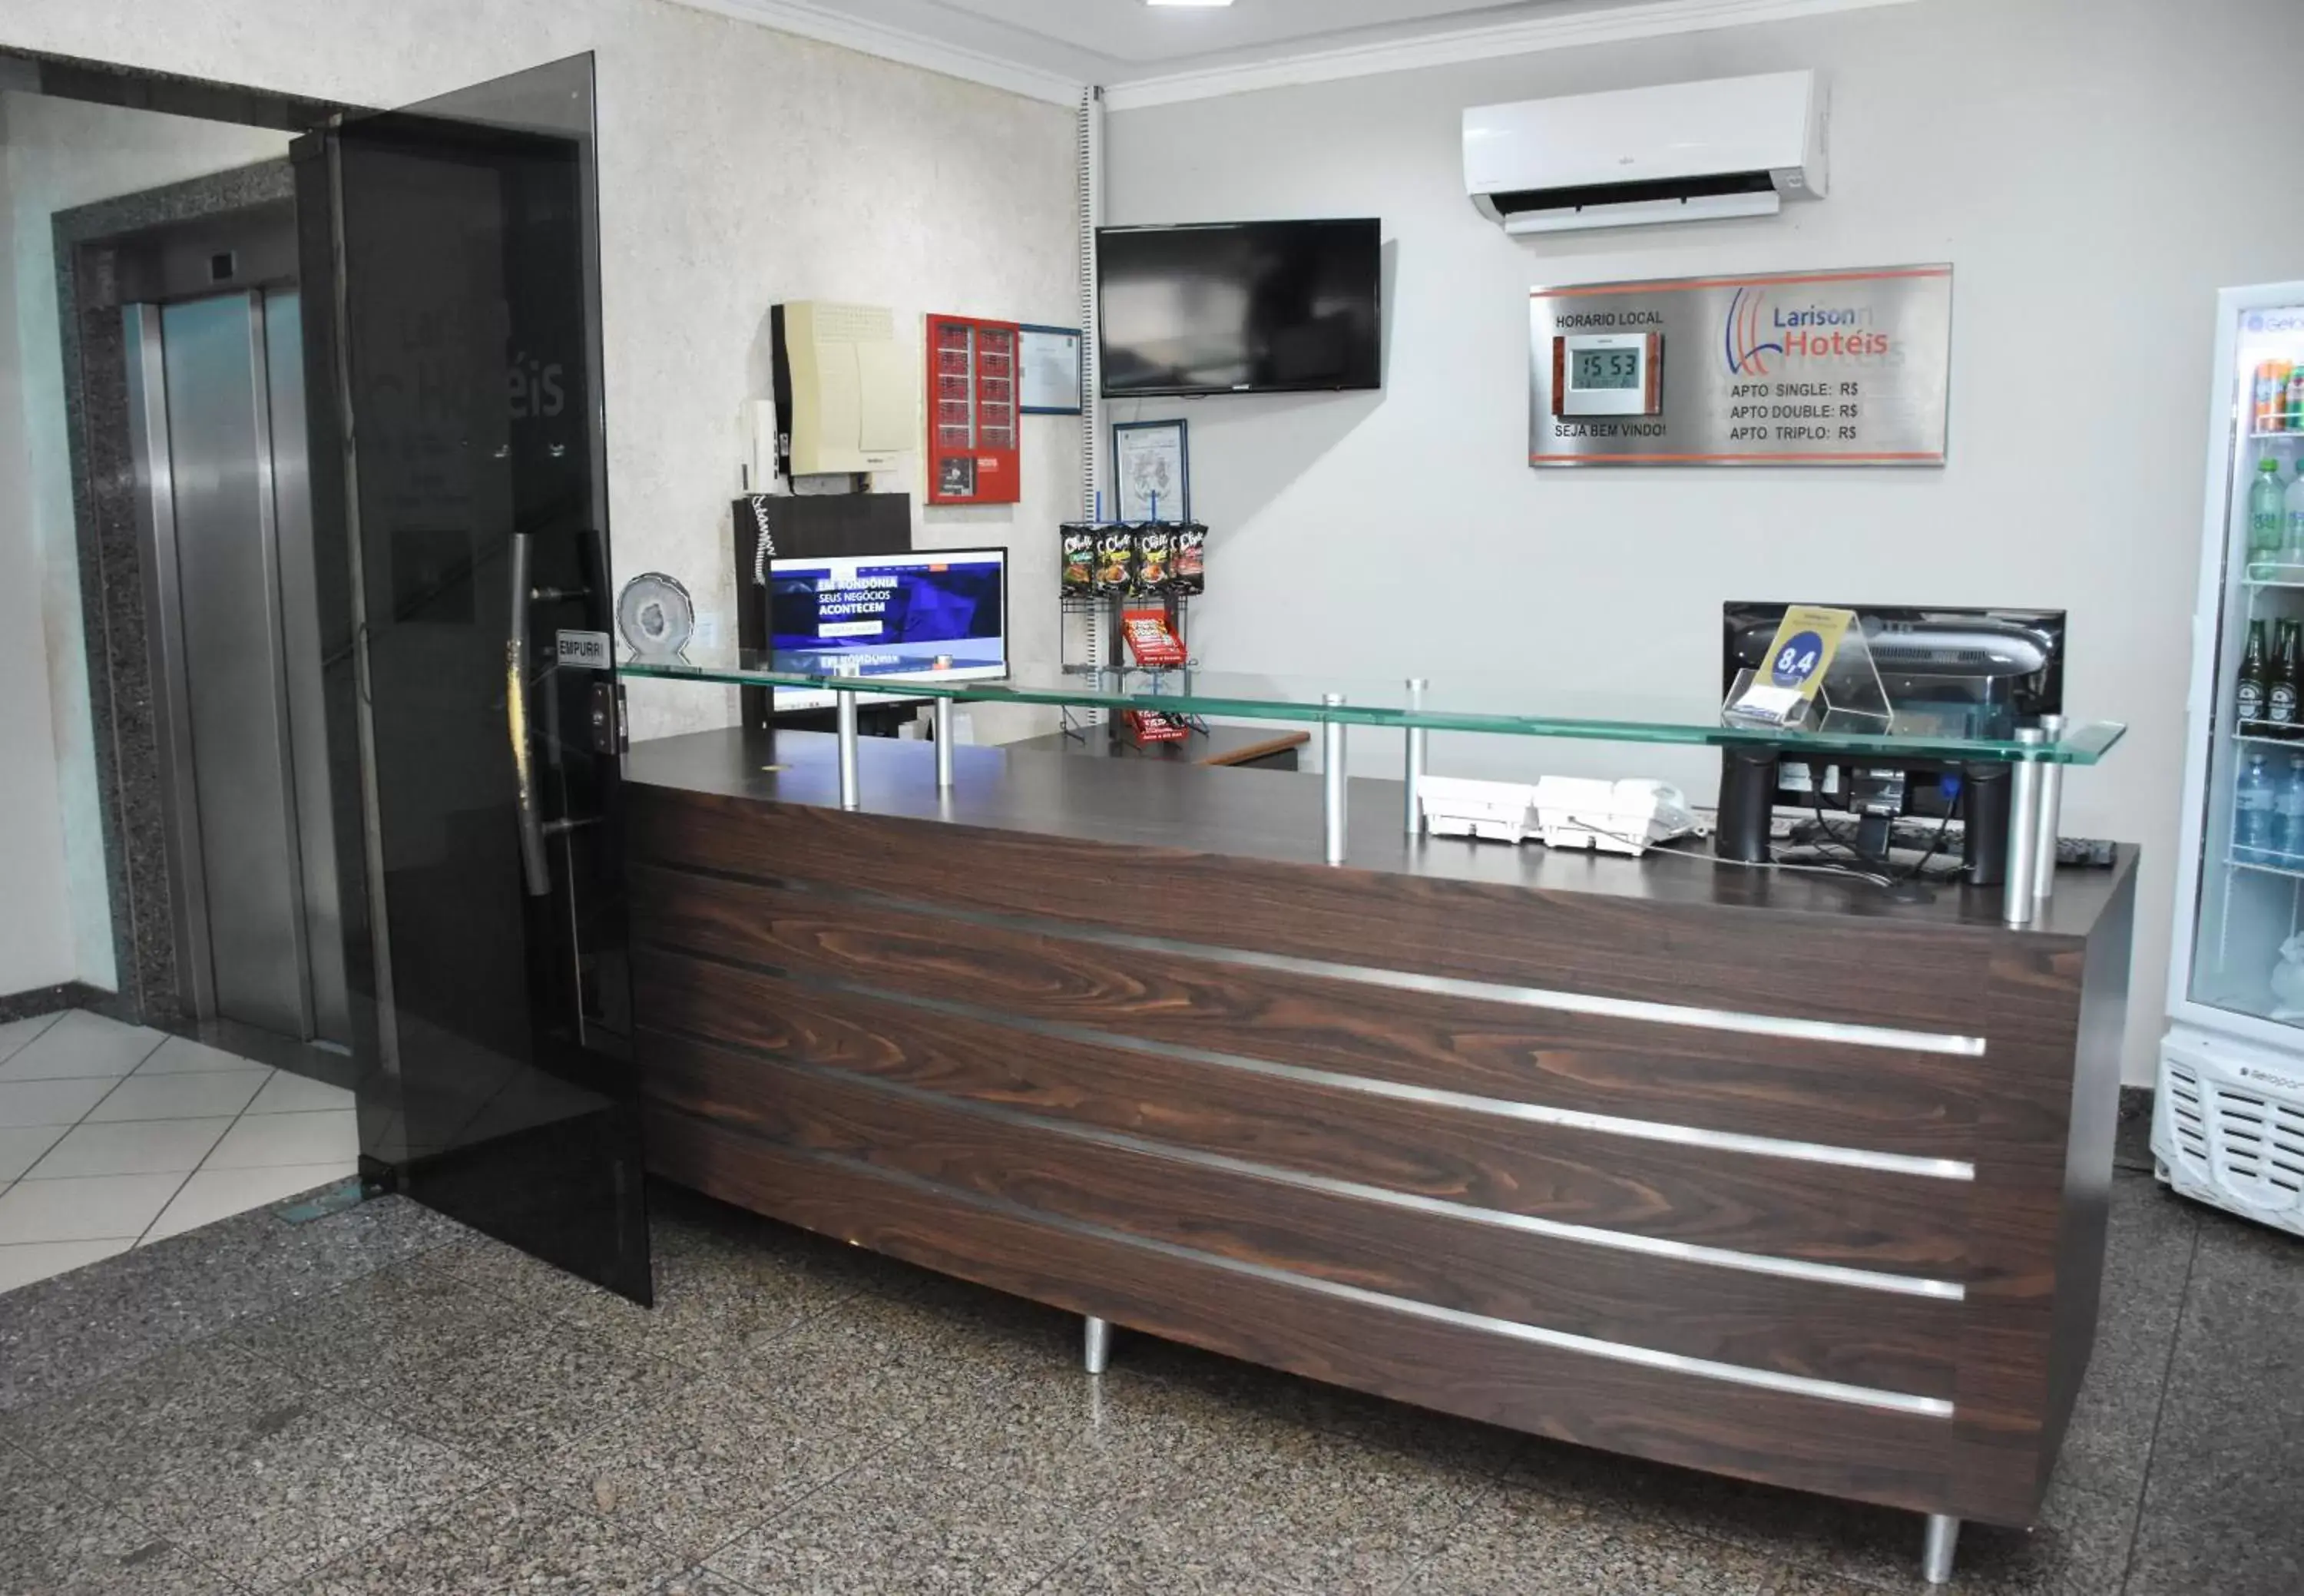 Lobby or reception, Lobby/Reception in Larison Hotéis - Ji-Paraná